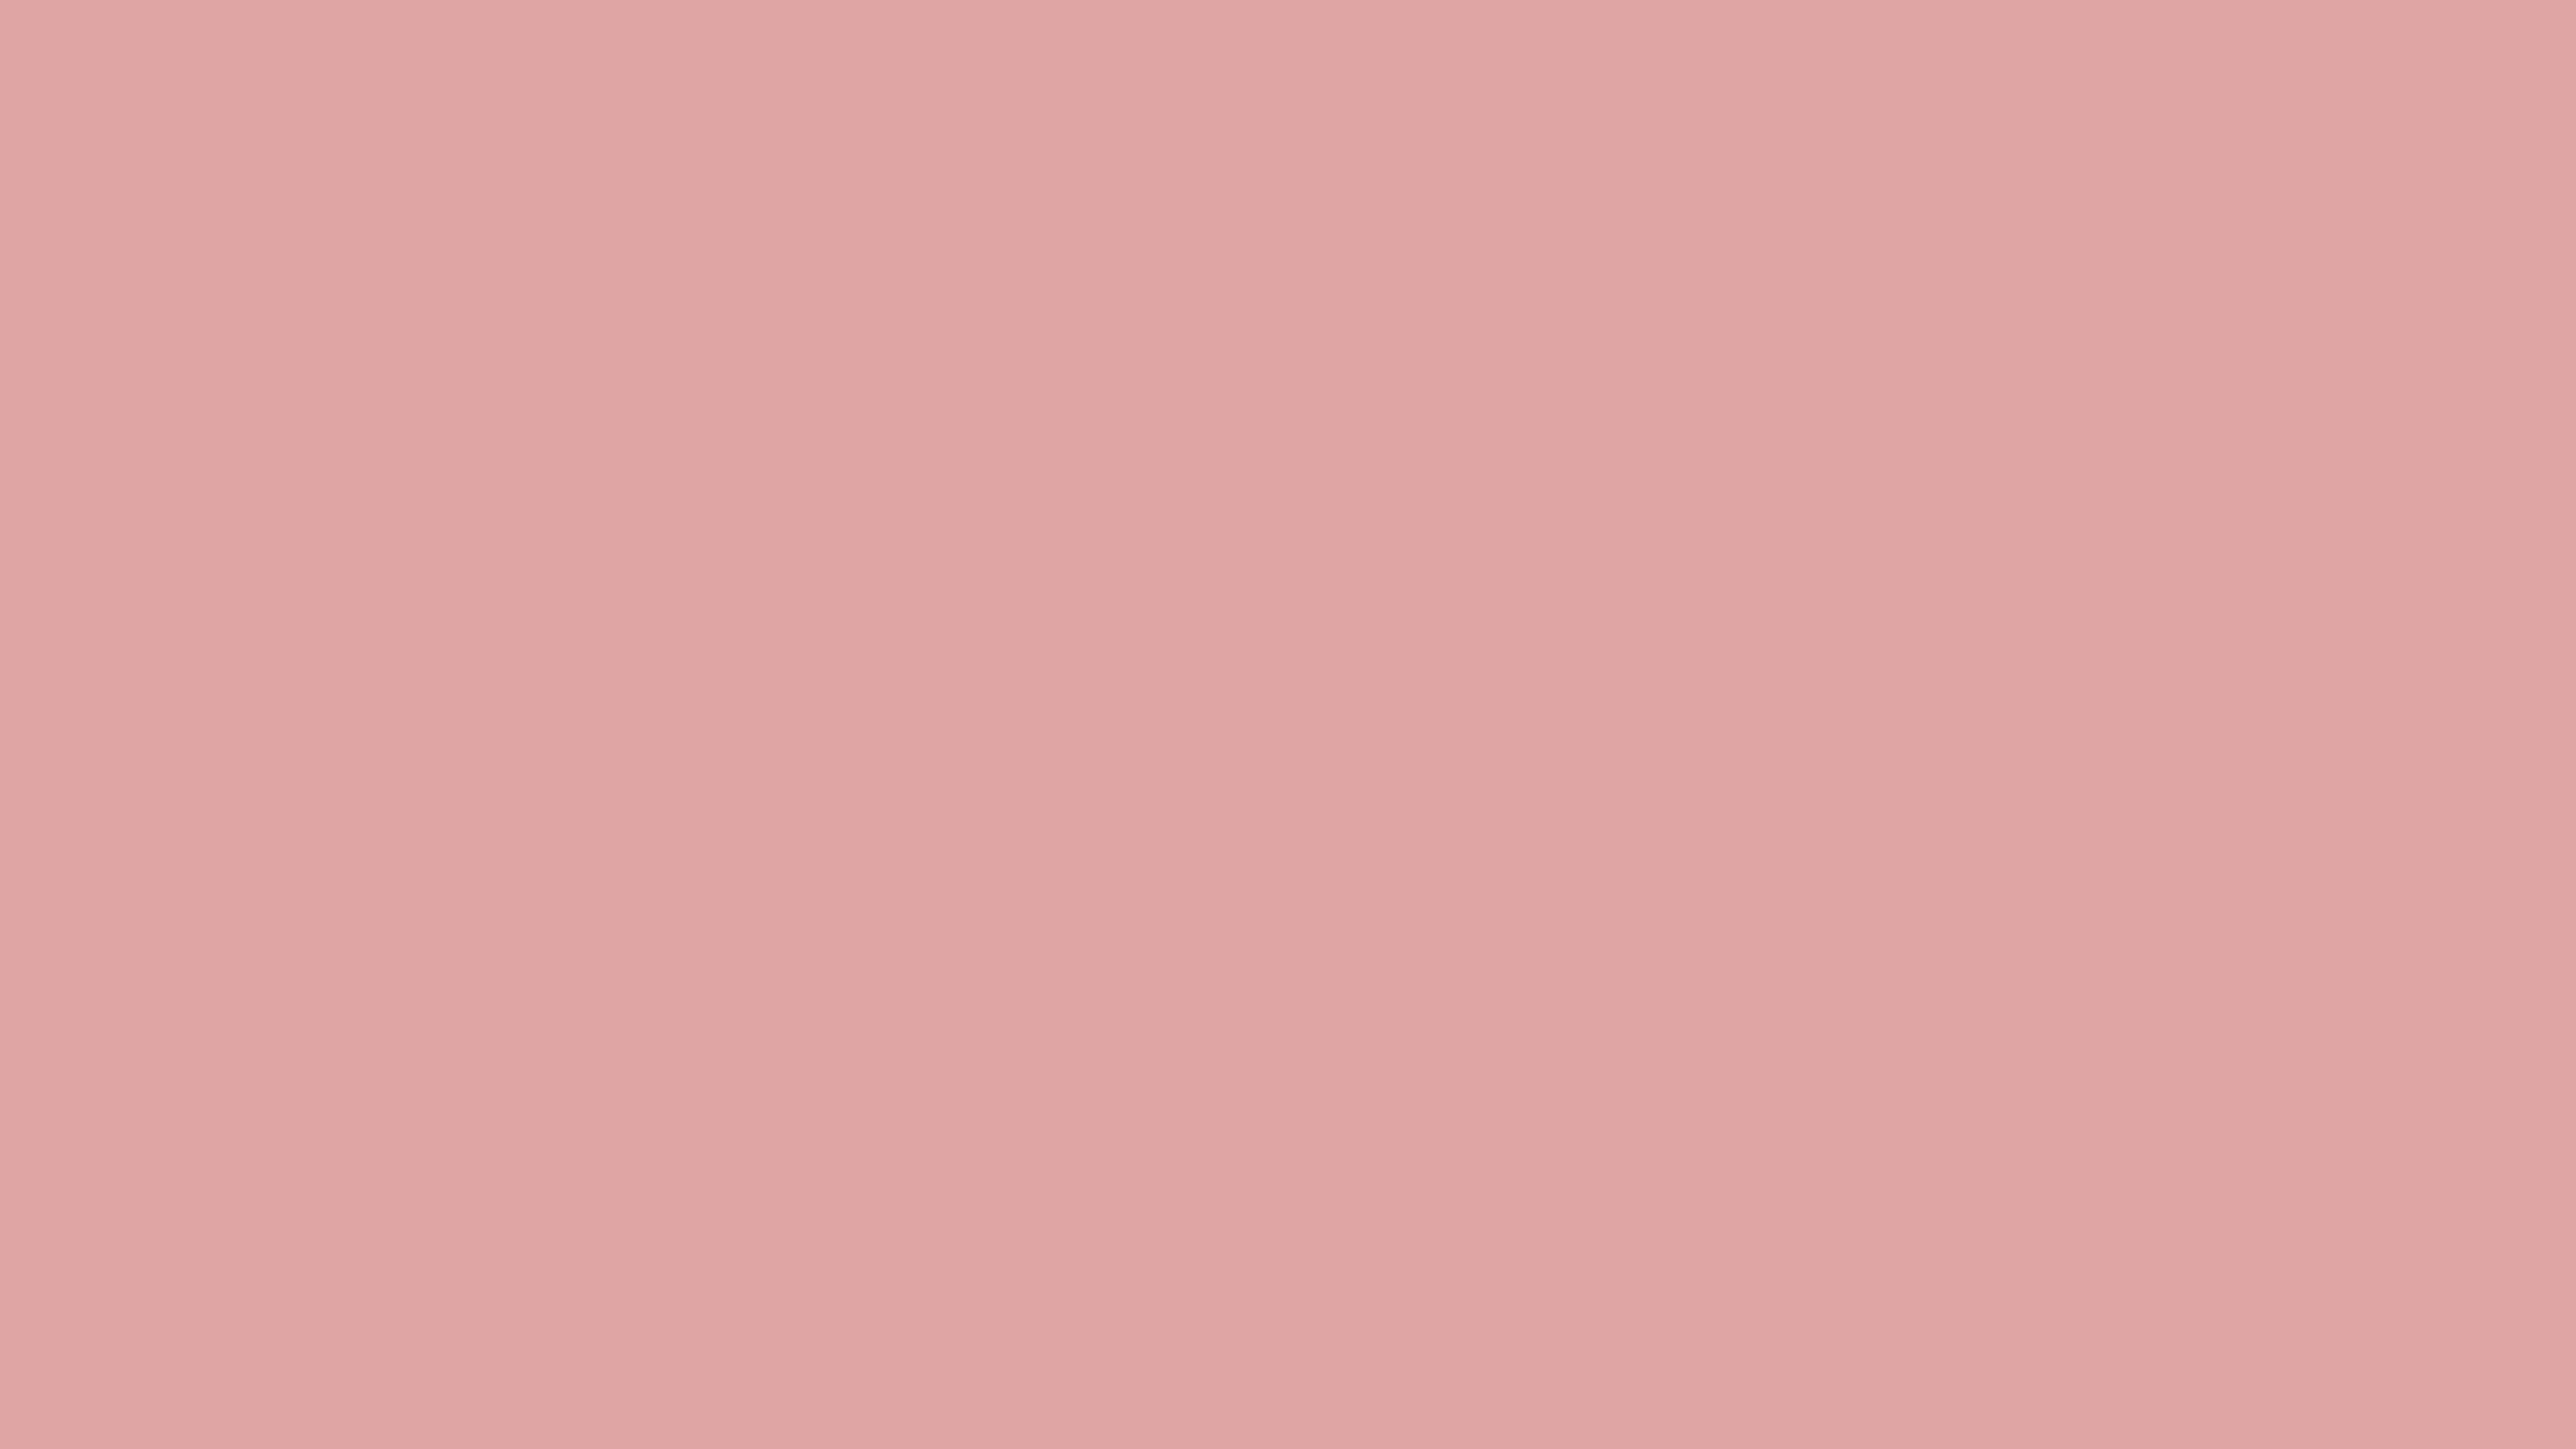 Nền màu hồng nhạt đơn sắc 8K sẽ mang lại cho bạn sự nữ tính và ấm áp. Với độ phân giải cao 8K, bạn sẽ được trải nghiệm một màu sắc đậm nét, tinh tế và sáng tạo, đồng thời cũng tạo vẻ đẹp tuyệt đẹp và thanh lịch.